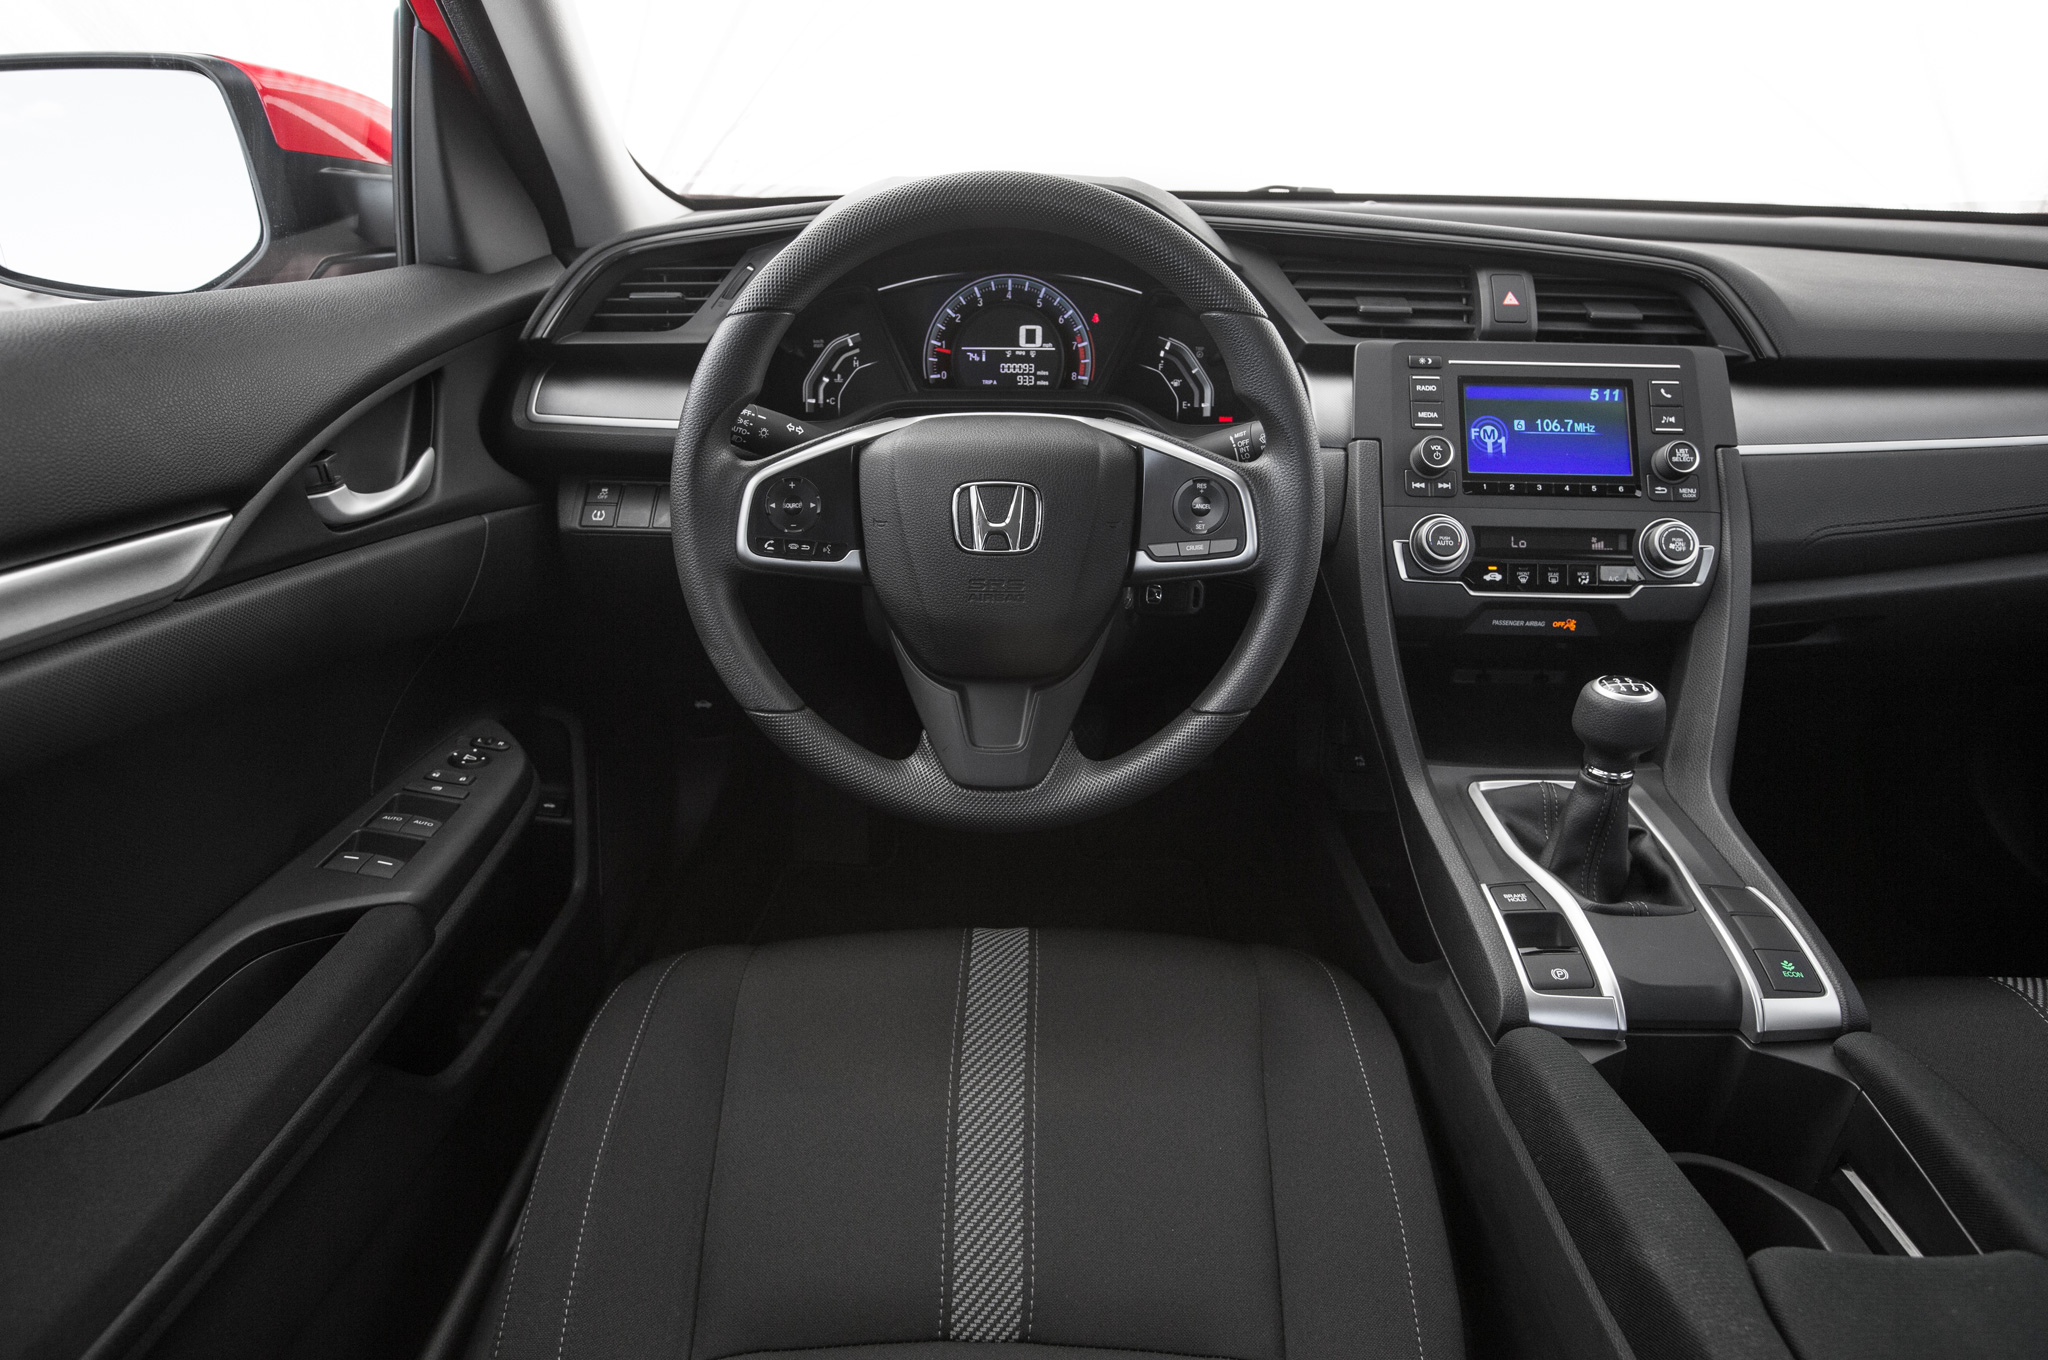 2016 Honda Civic Ex-t User Manual